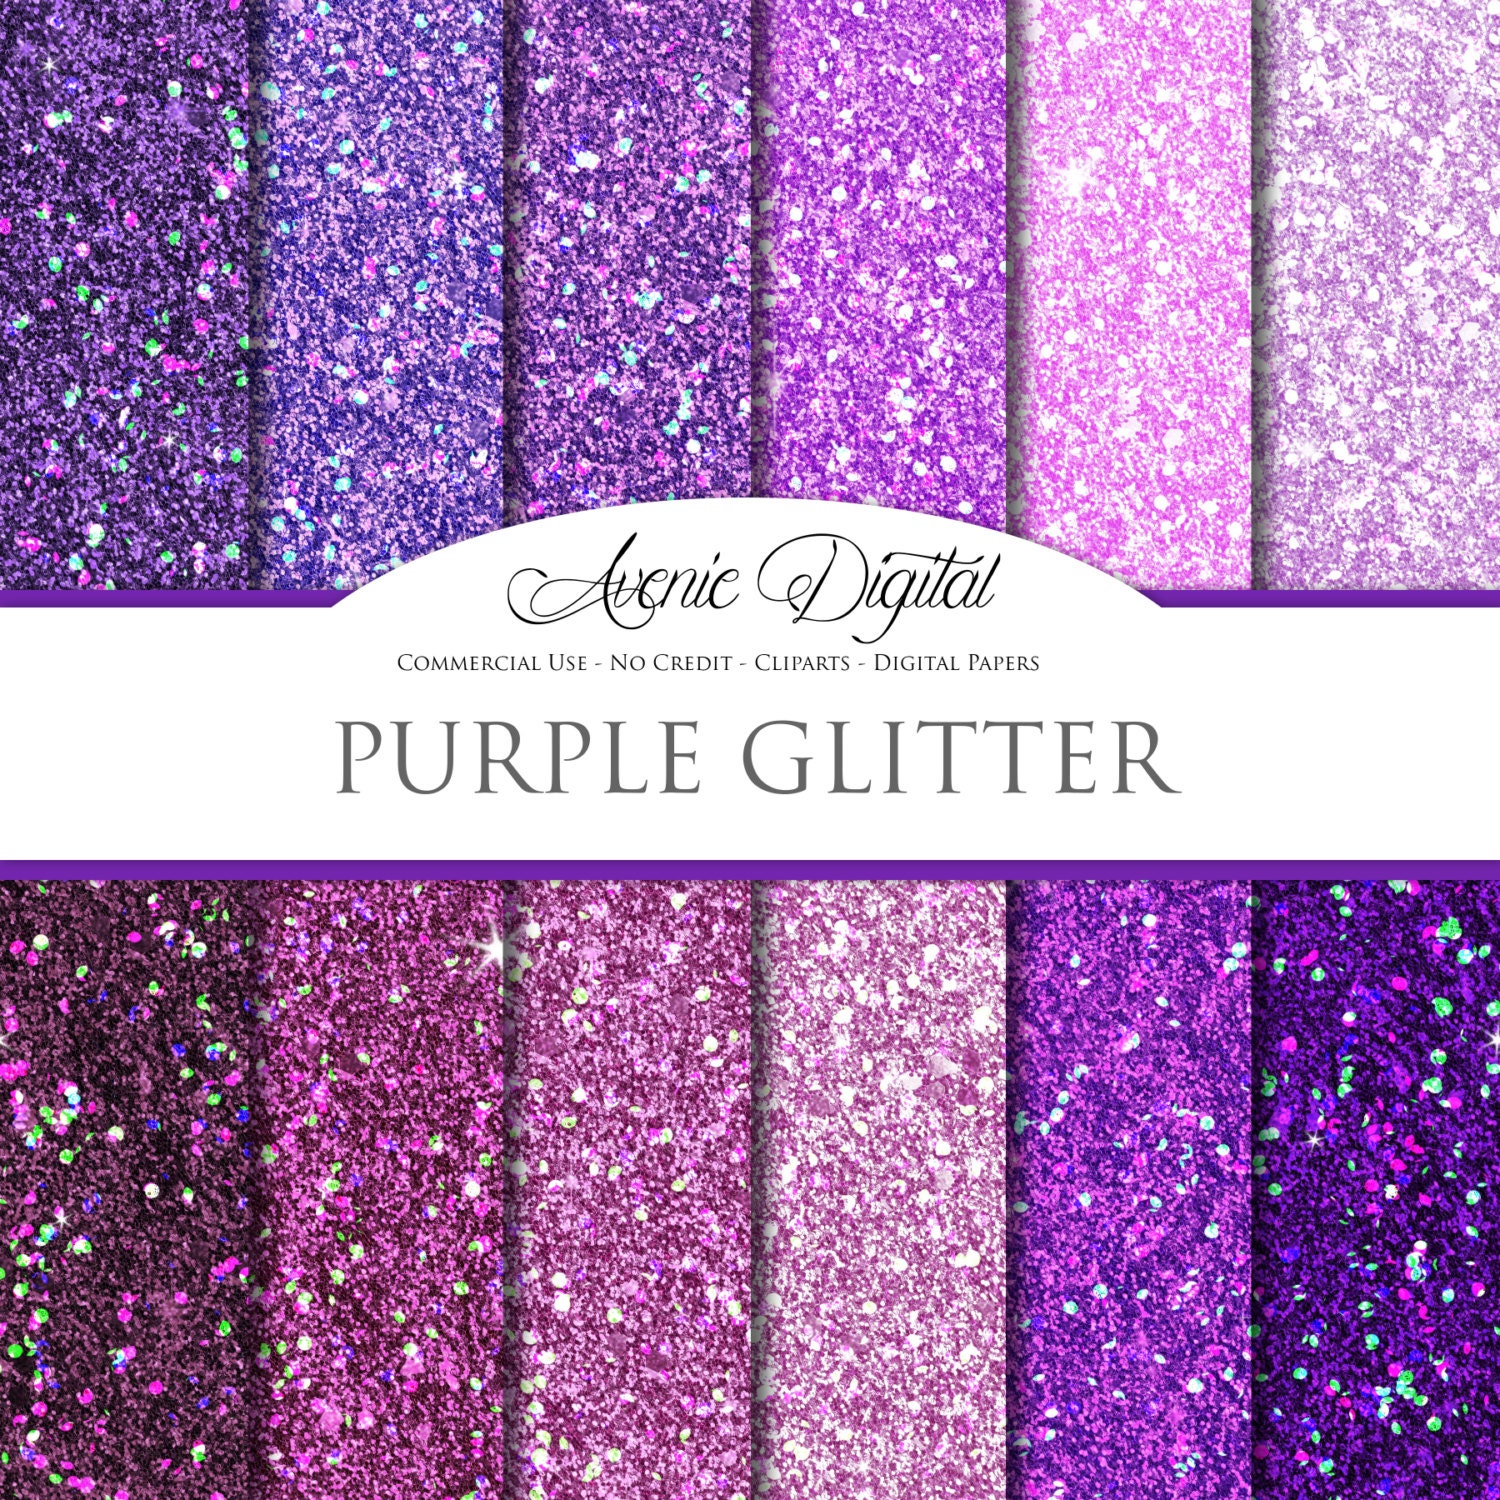 Husk Ups Barber Purple Glitter Digital Paper. Scrapbooking Backgrounds - Etsy